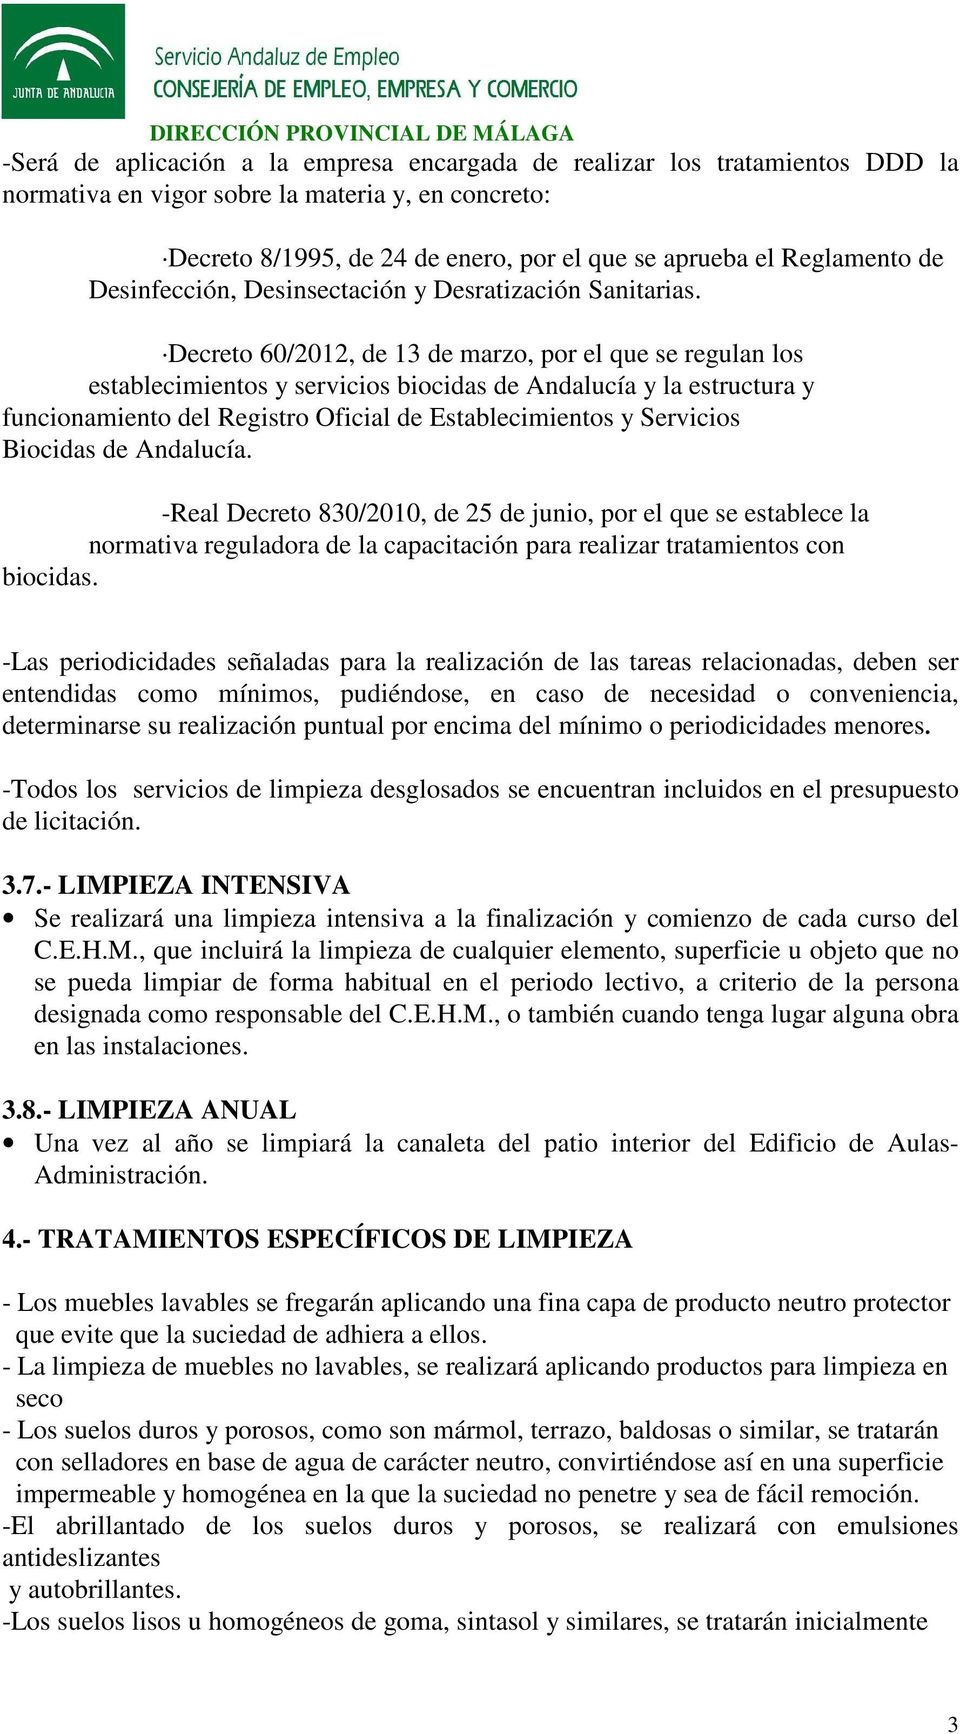 Decreto 60/2012, de 13 de marzo, por el que se regulan los establecimientos y servicios biocidas de Andalucía y la estructura y funcionamiento del Registro Oficial de Establecimientos y Servicios